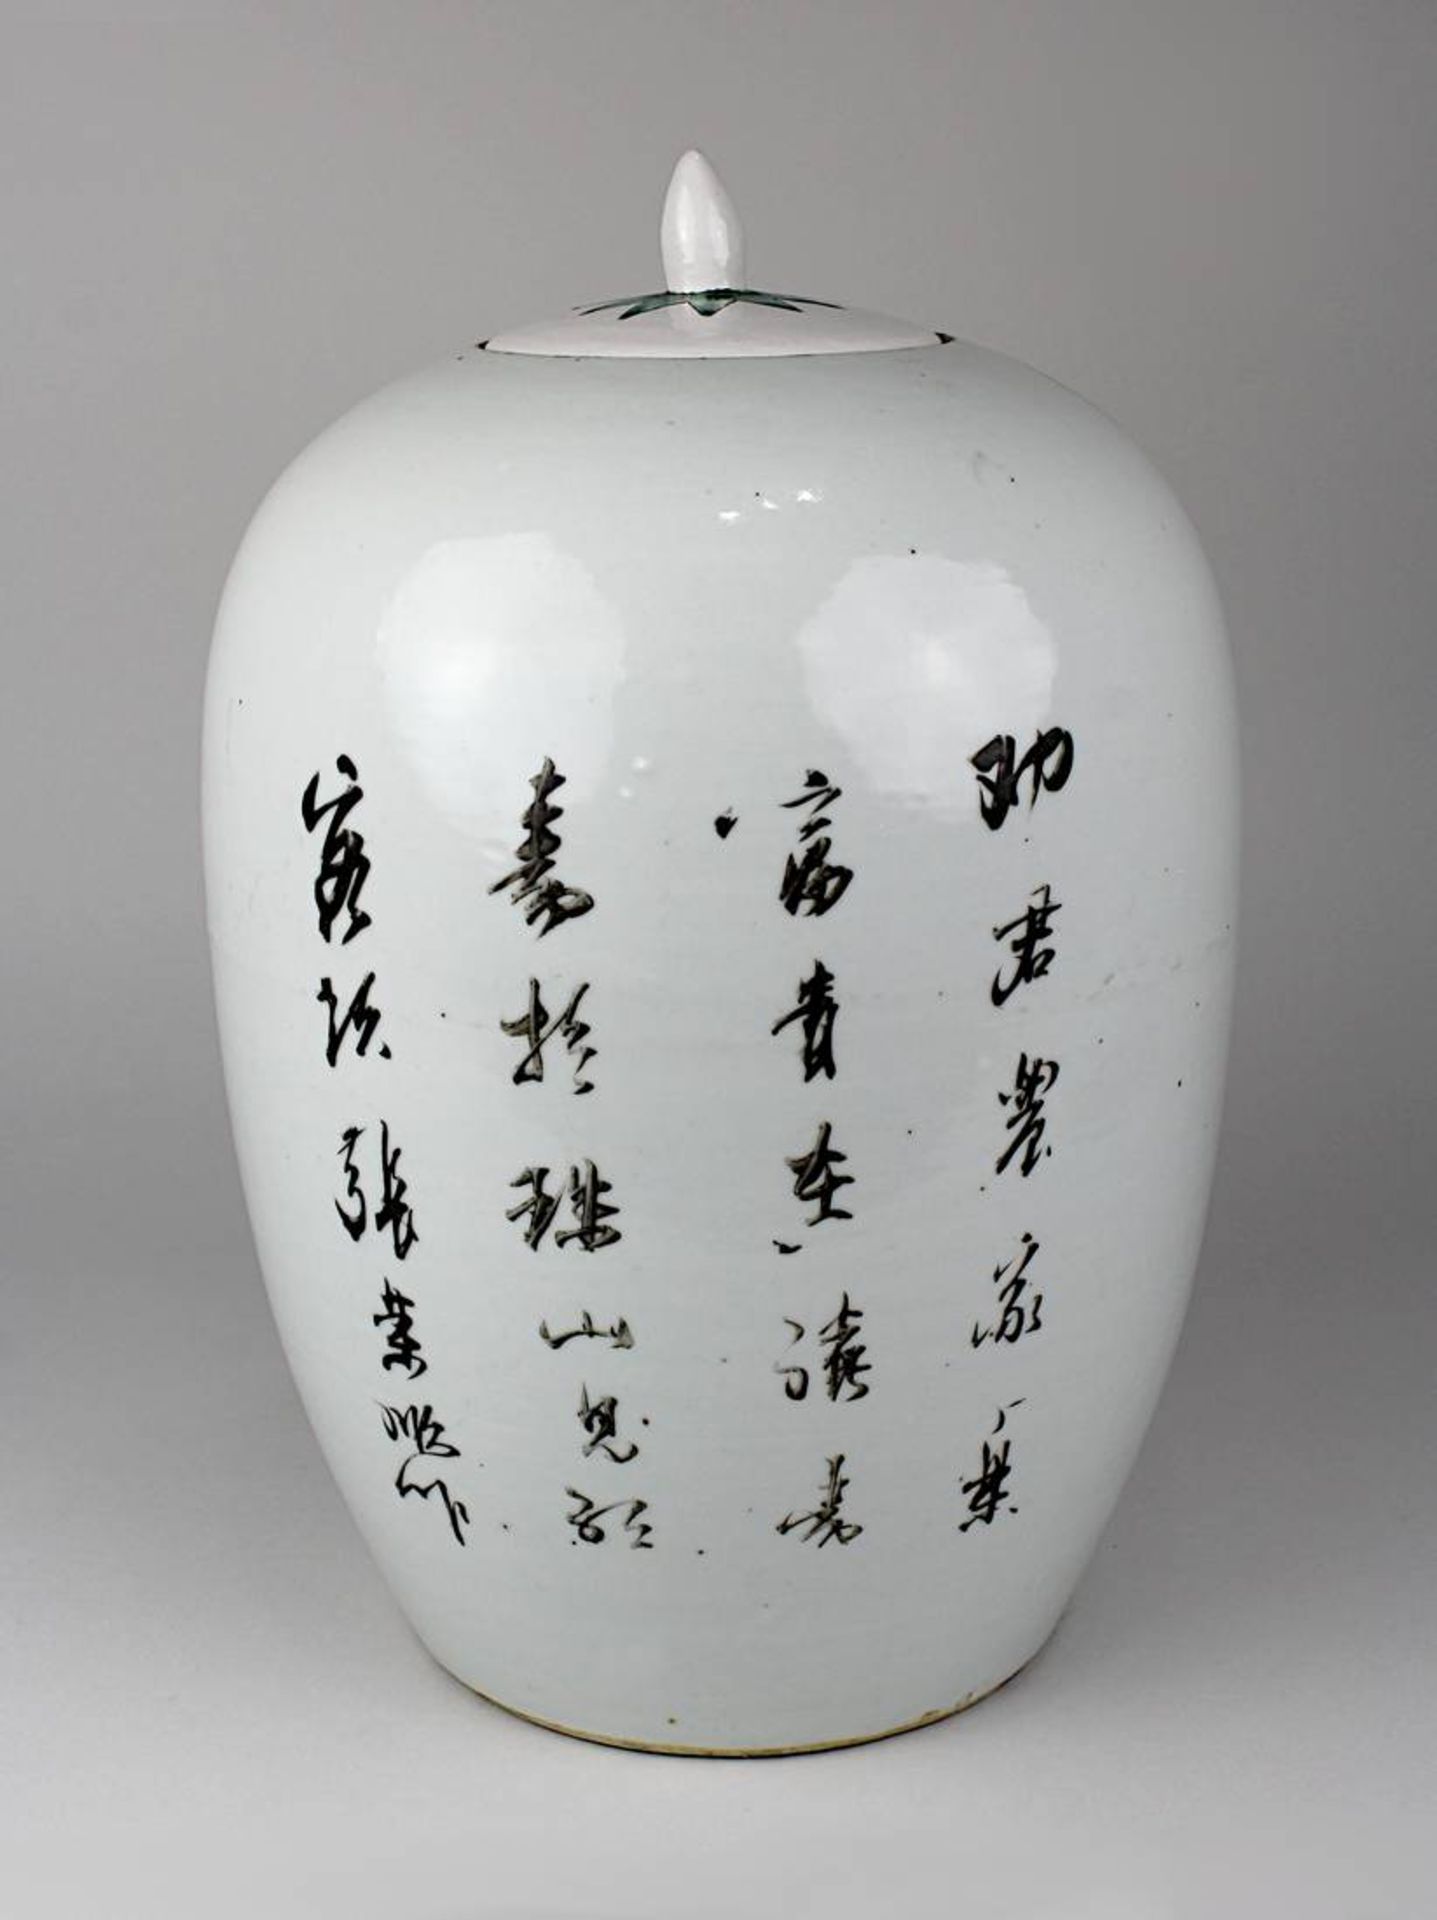 Chinesischer Schultertopf aus Porzellan, um 1900, Deckel aus Keramik ergänzt, handgedrehter - Image 2 of 2